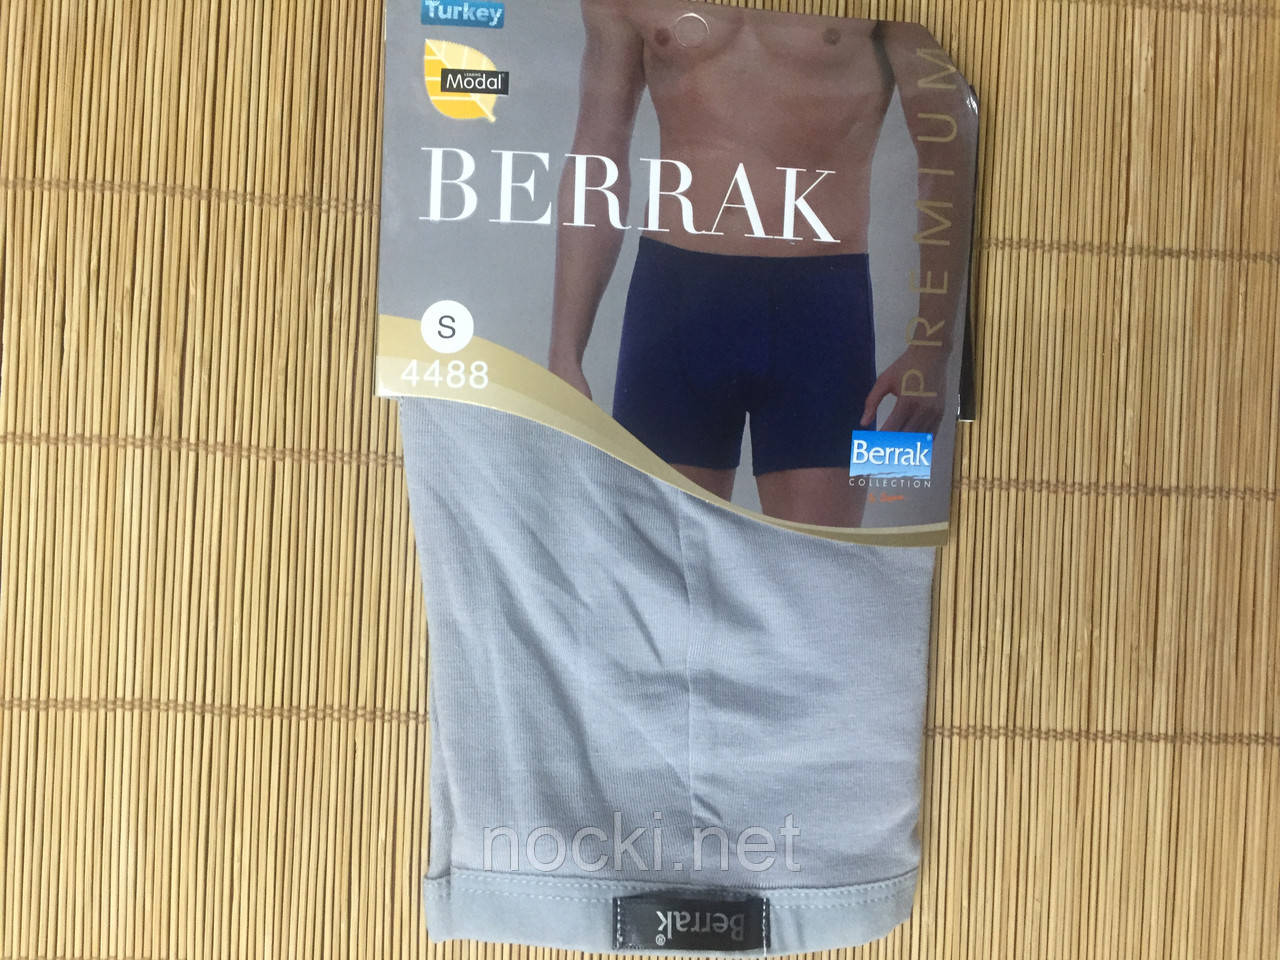 Premium Collection Underwear